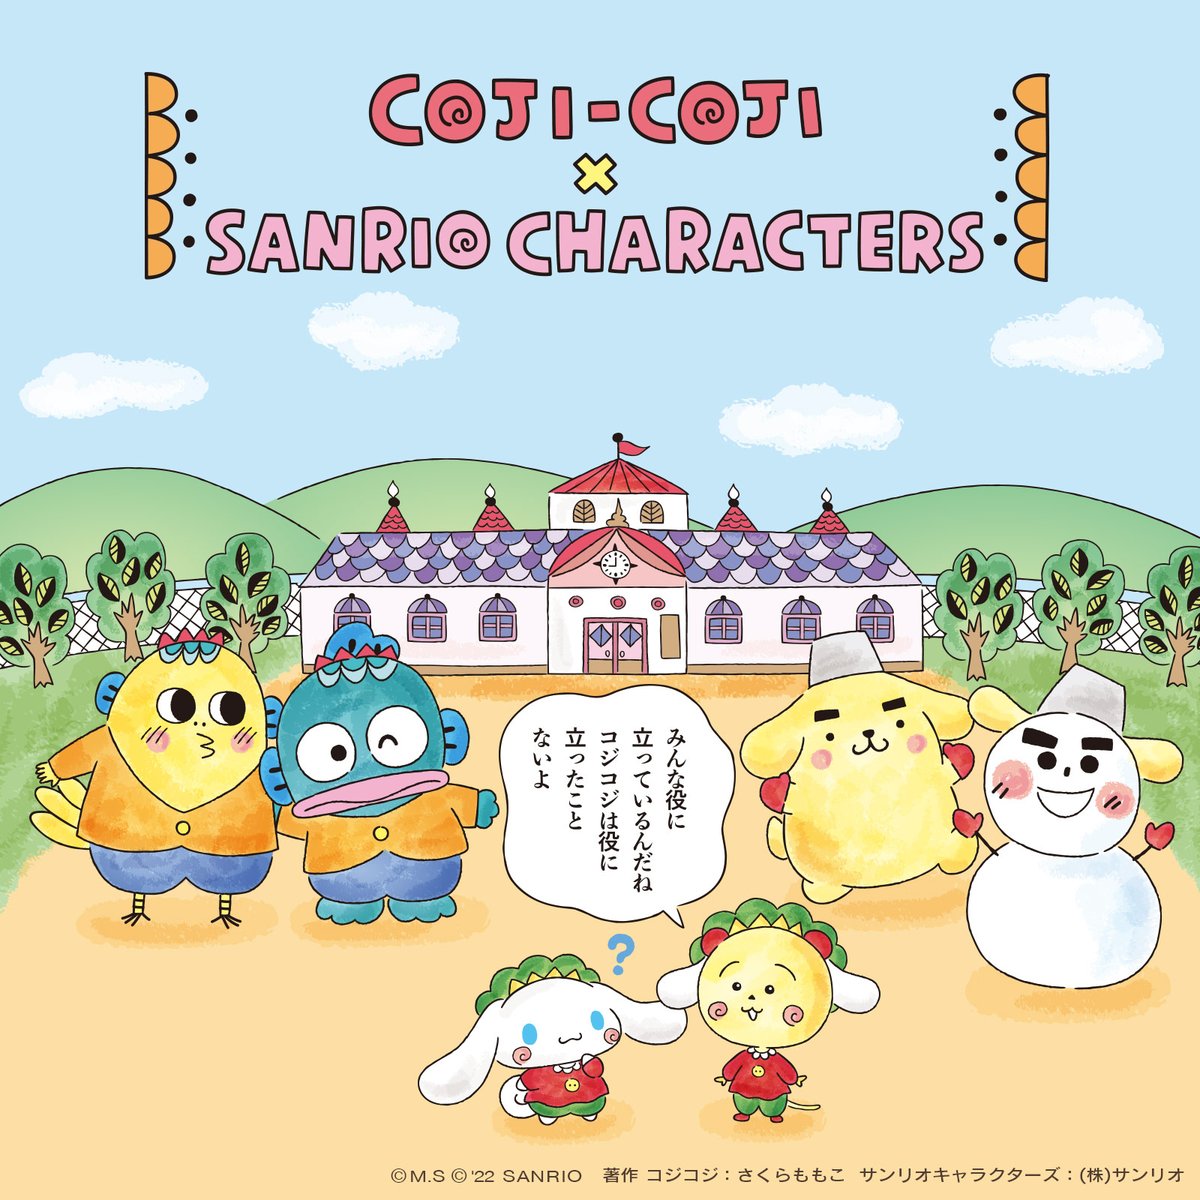 シナモロール20周年記念「コジコジ」× サンリオキャラクターズがコラボ!